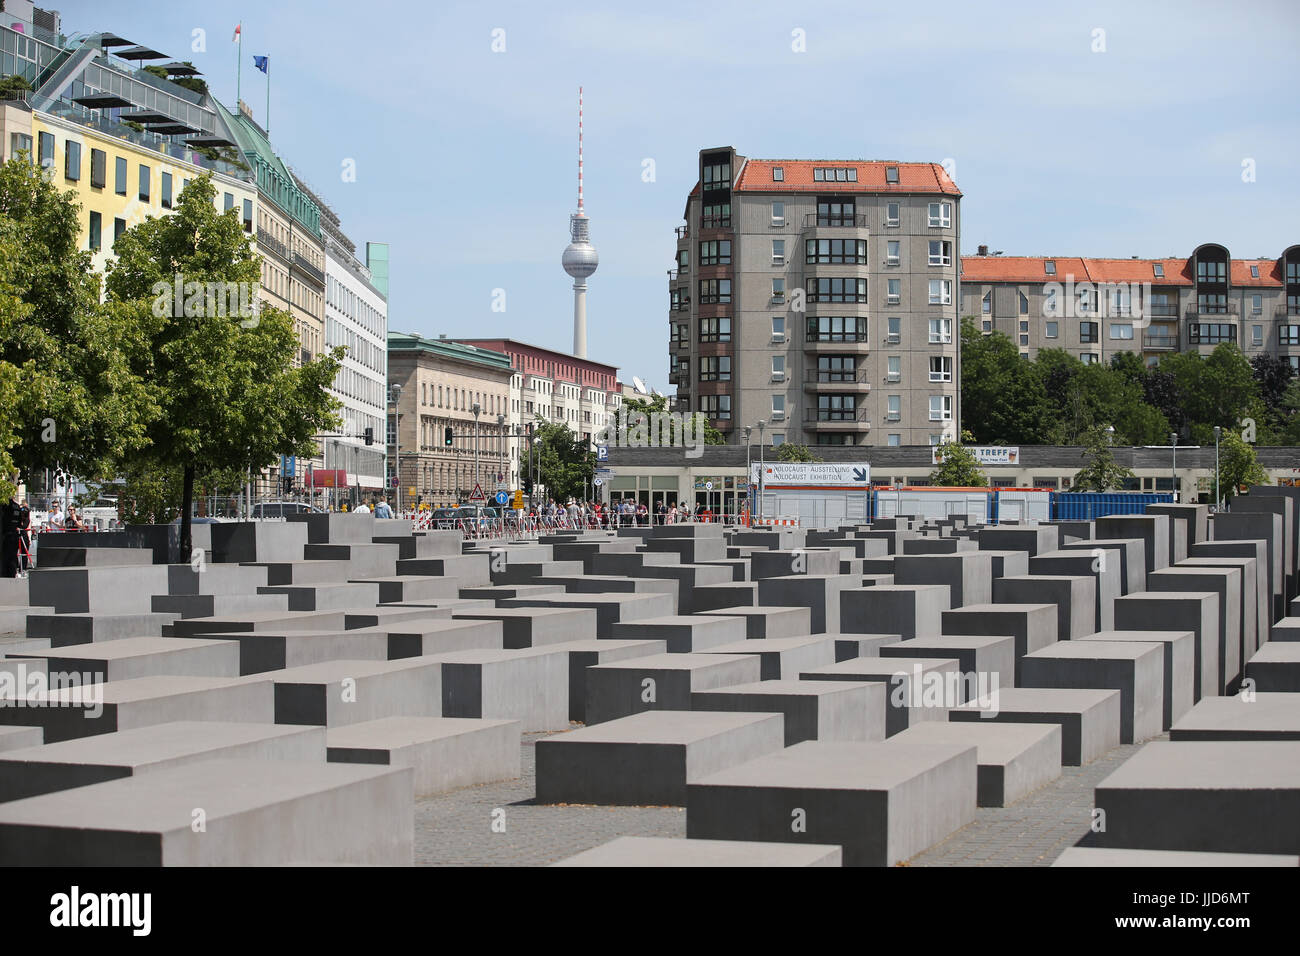 Das Denkmal für die ermordeten Juden Europas, auch bekannt als das Holocaust-Mahnmal in Berlin, Deutschland, entworfen von Architekt Peter Eisenman und Ingenieur Buro Happold. Stockfoto